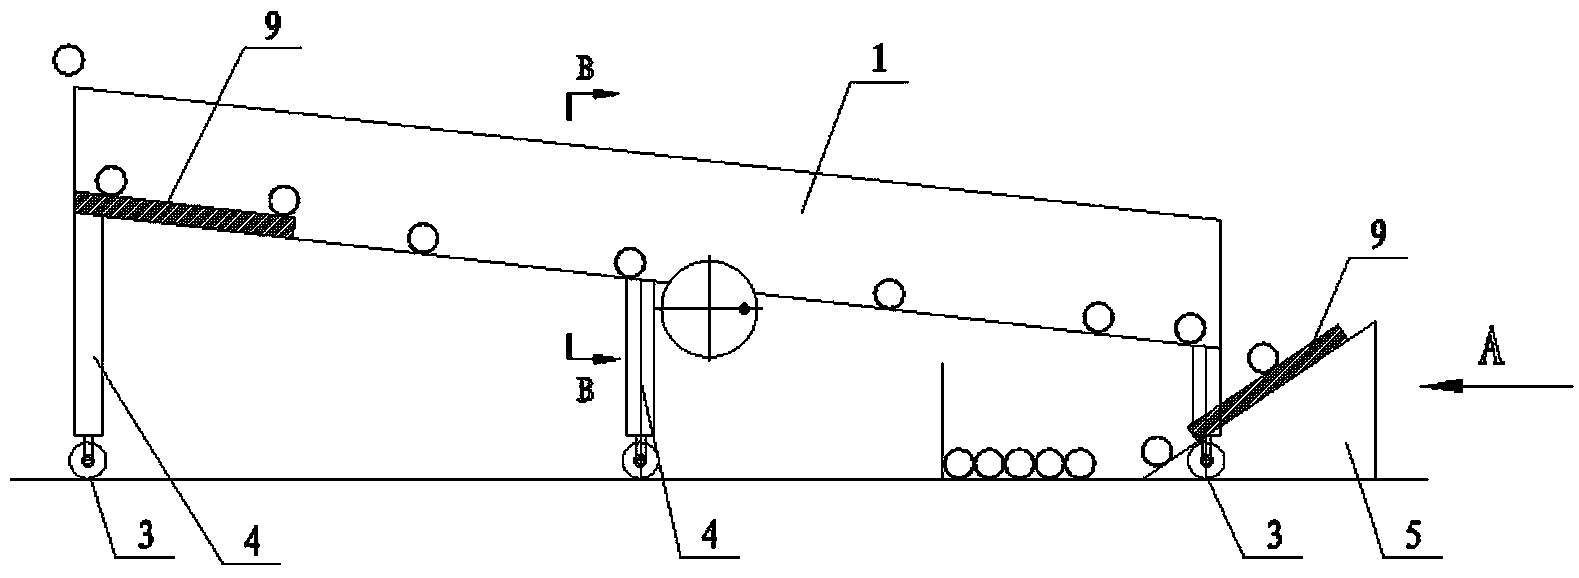 Carrier roller flow production line frame